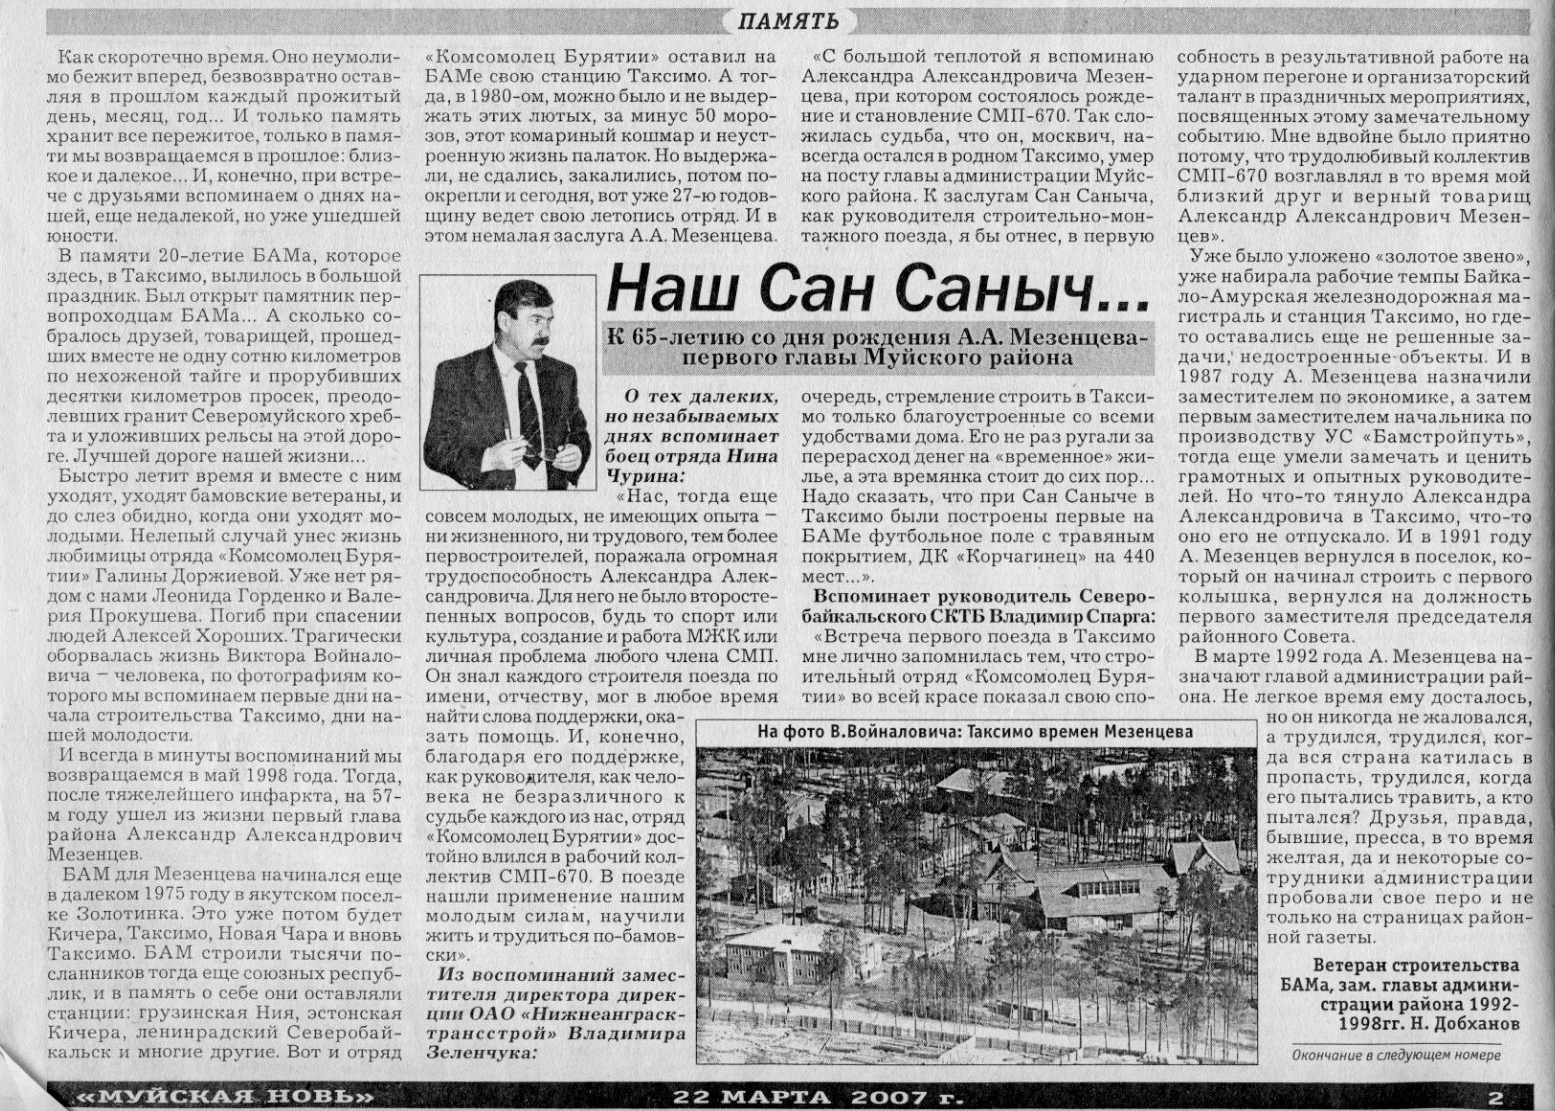 Наш Сан Саныч. Статья в газете 'Муйская новь' от 22 марта 2007 года. Начало